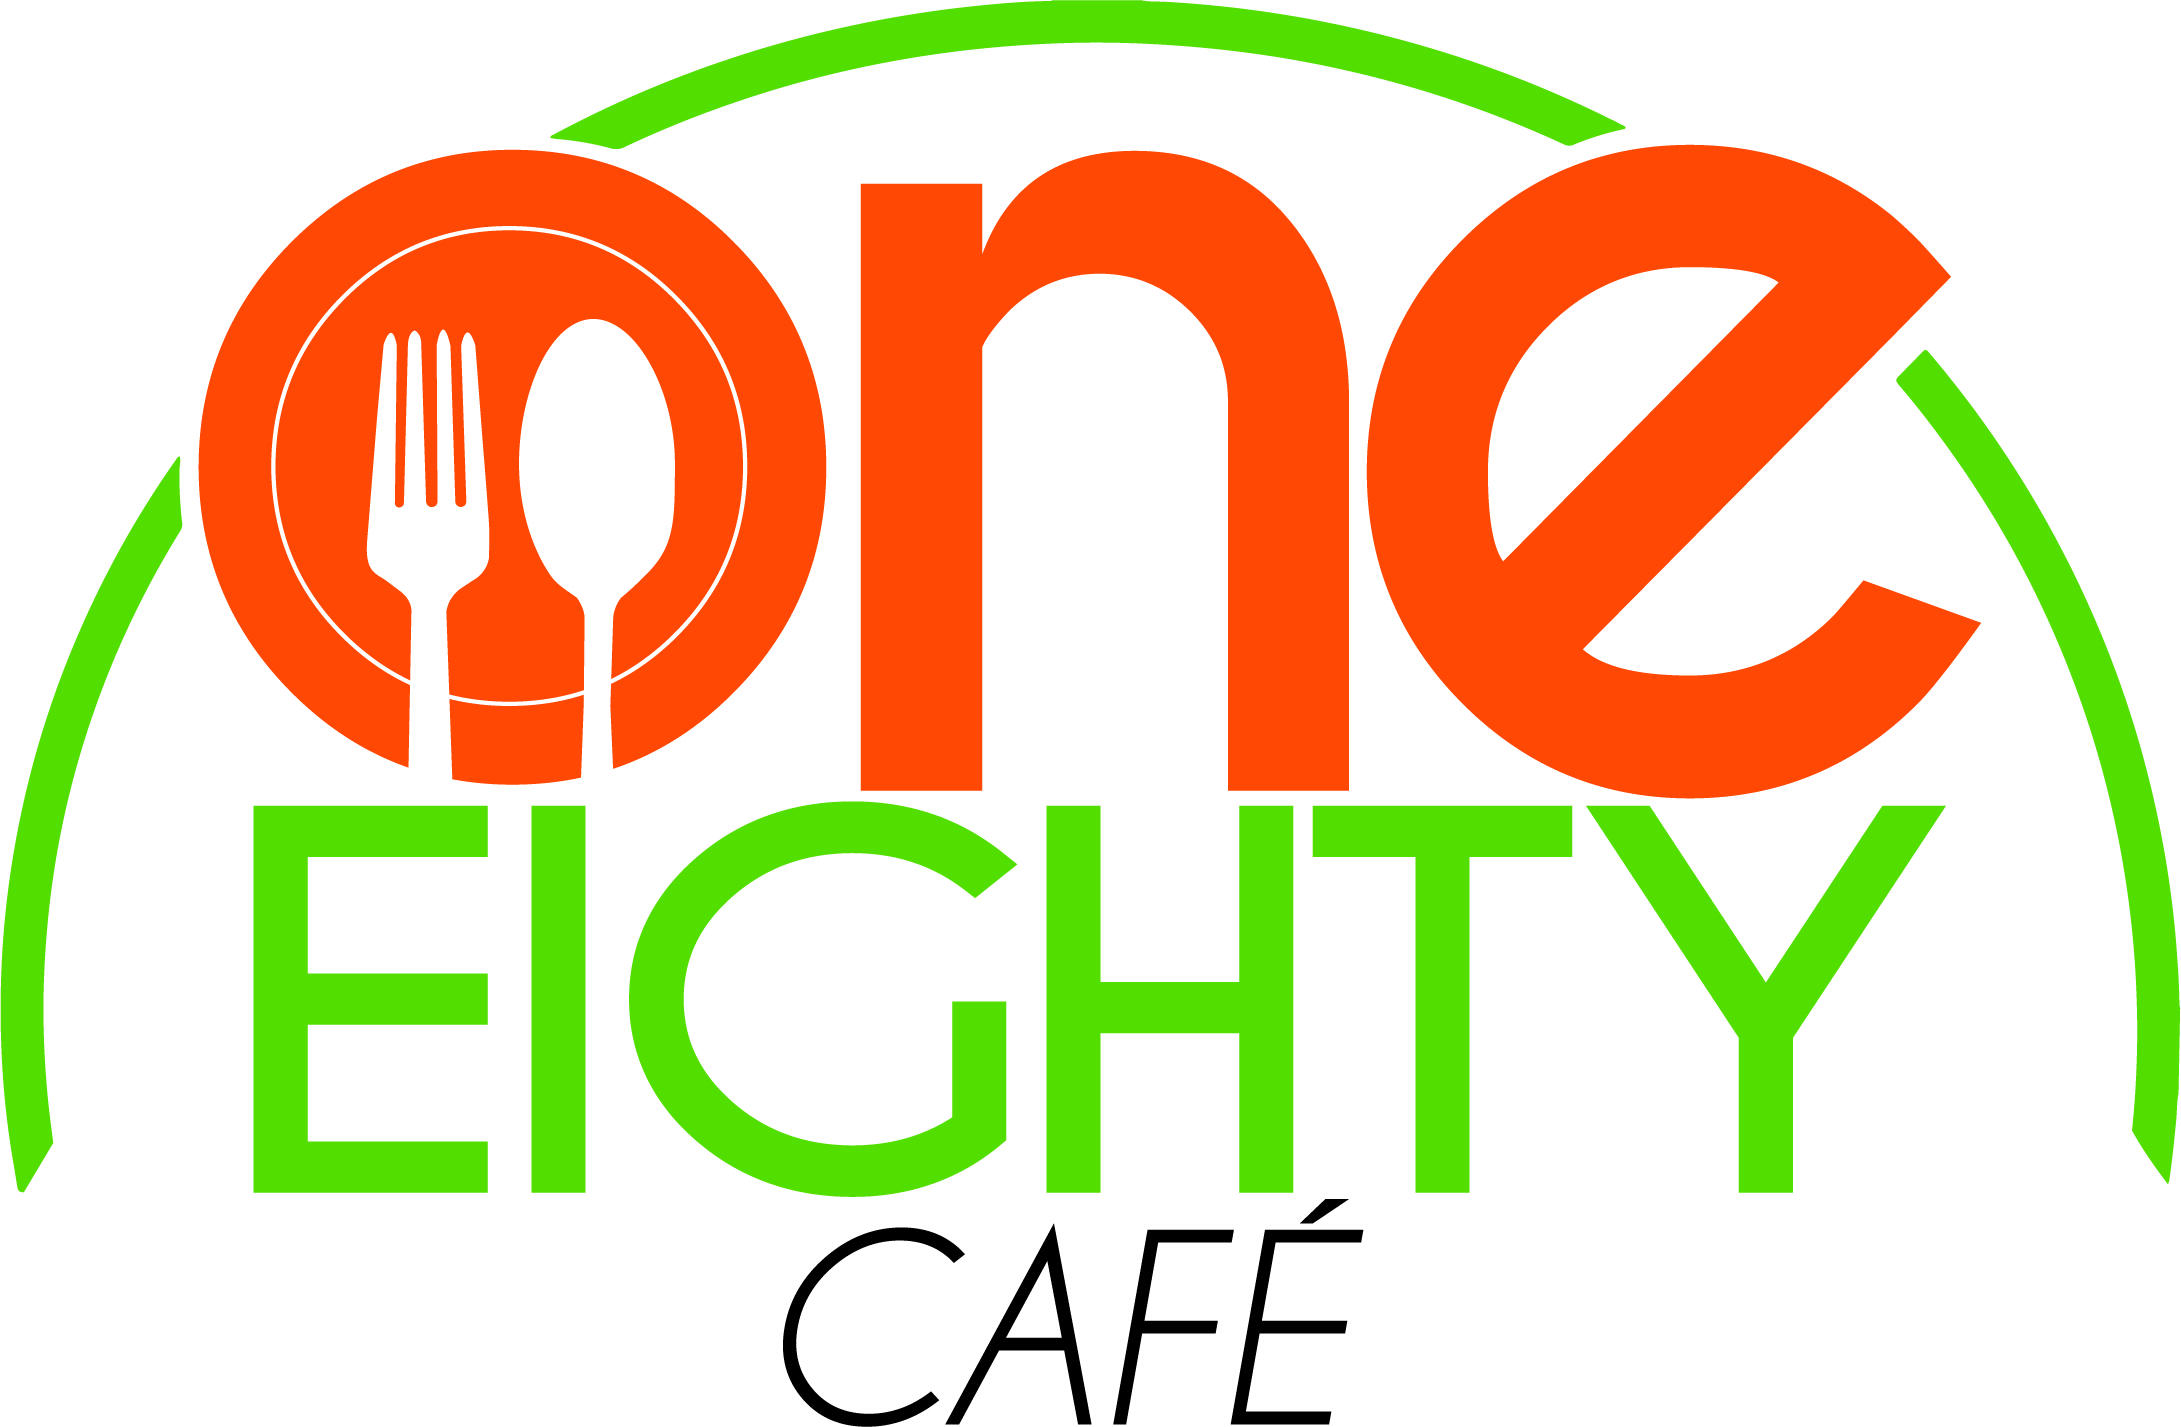 One Eighty Cafe Logo